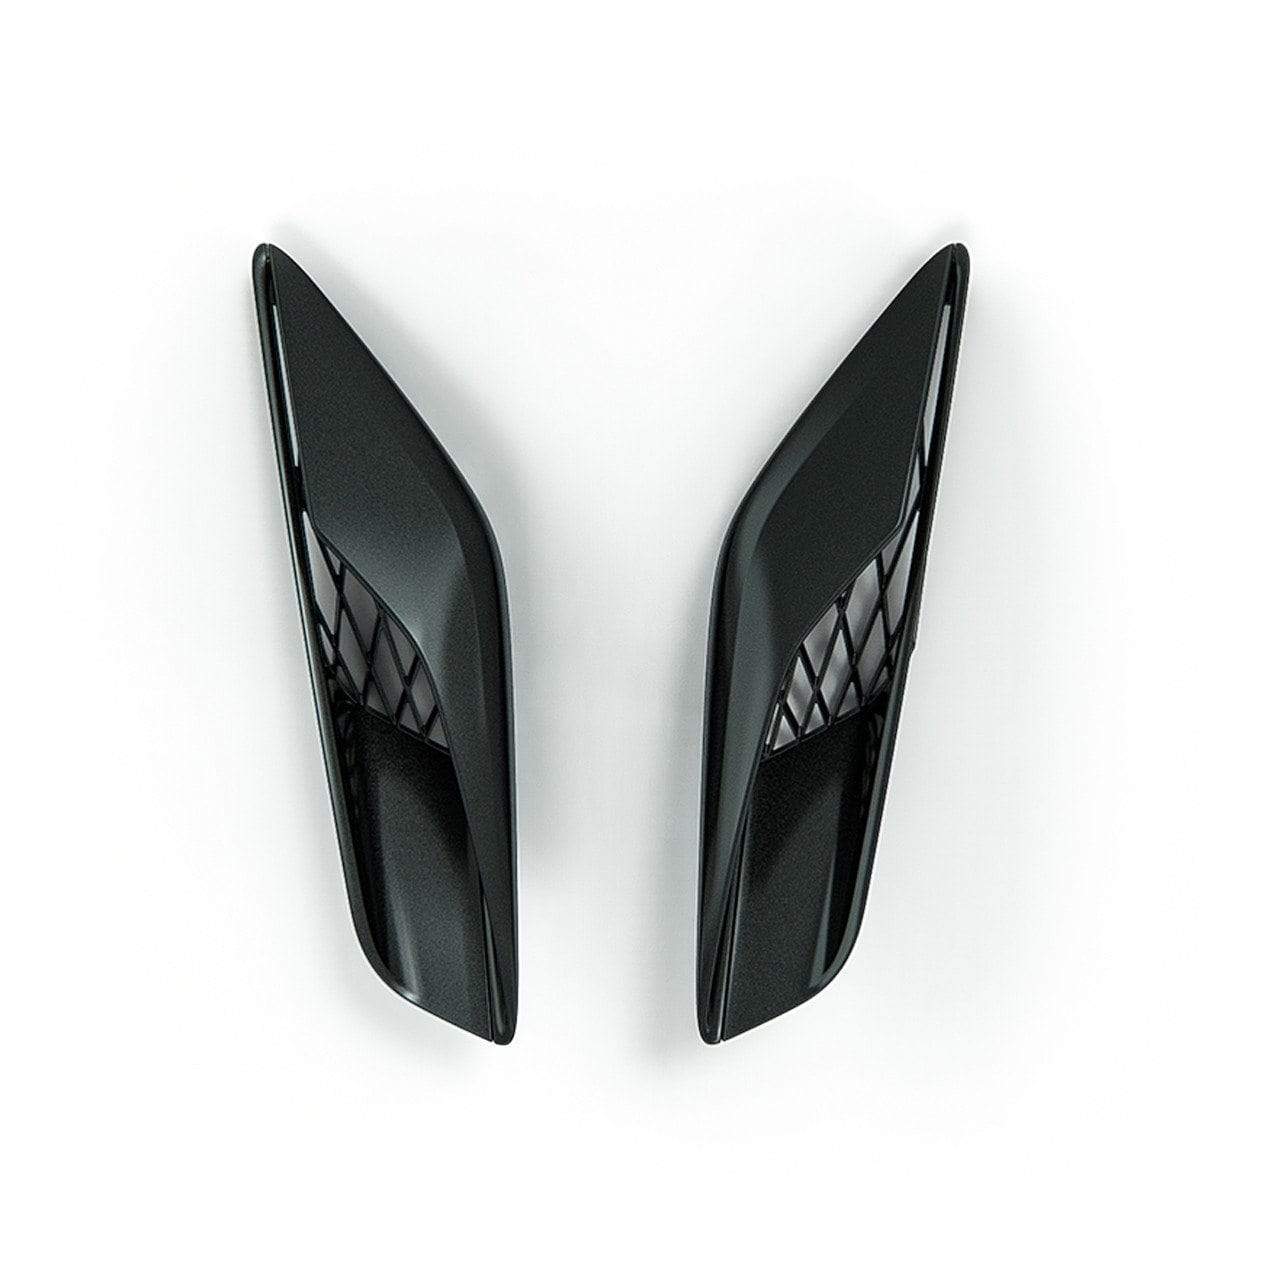 Z06 Upper Quarter Panel Vent in Carbon Flash Black for C7 Corvette Coupe | 45-4-127 by ACS Composite.